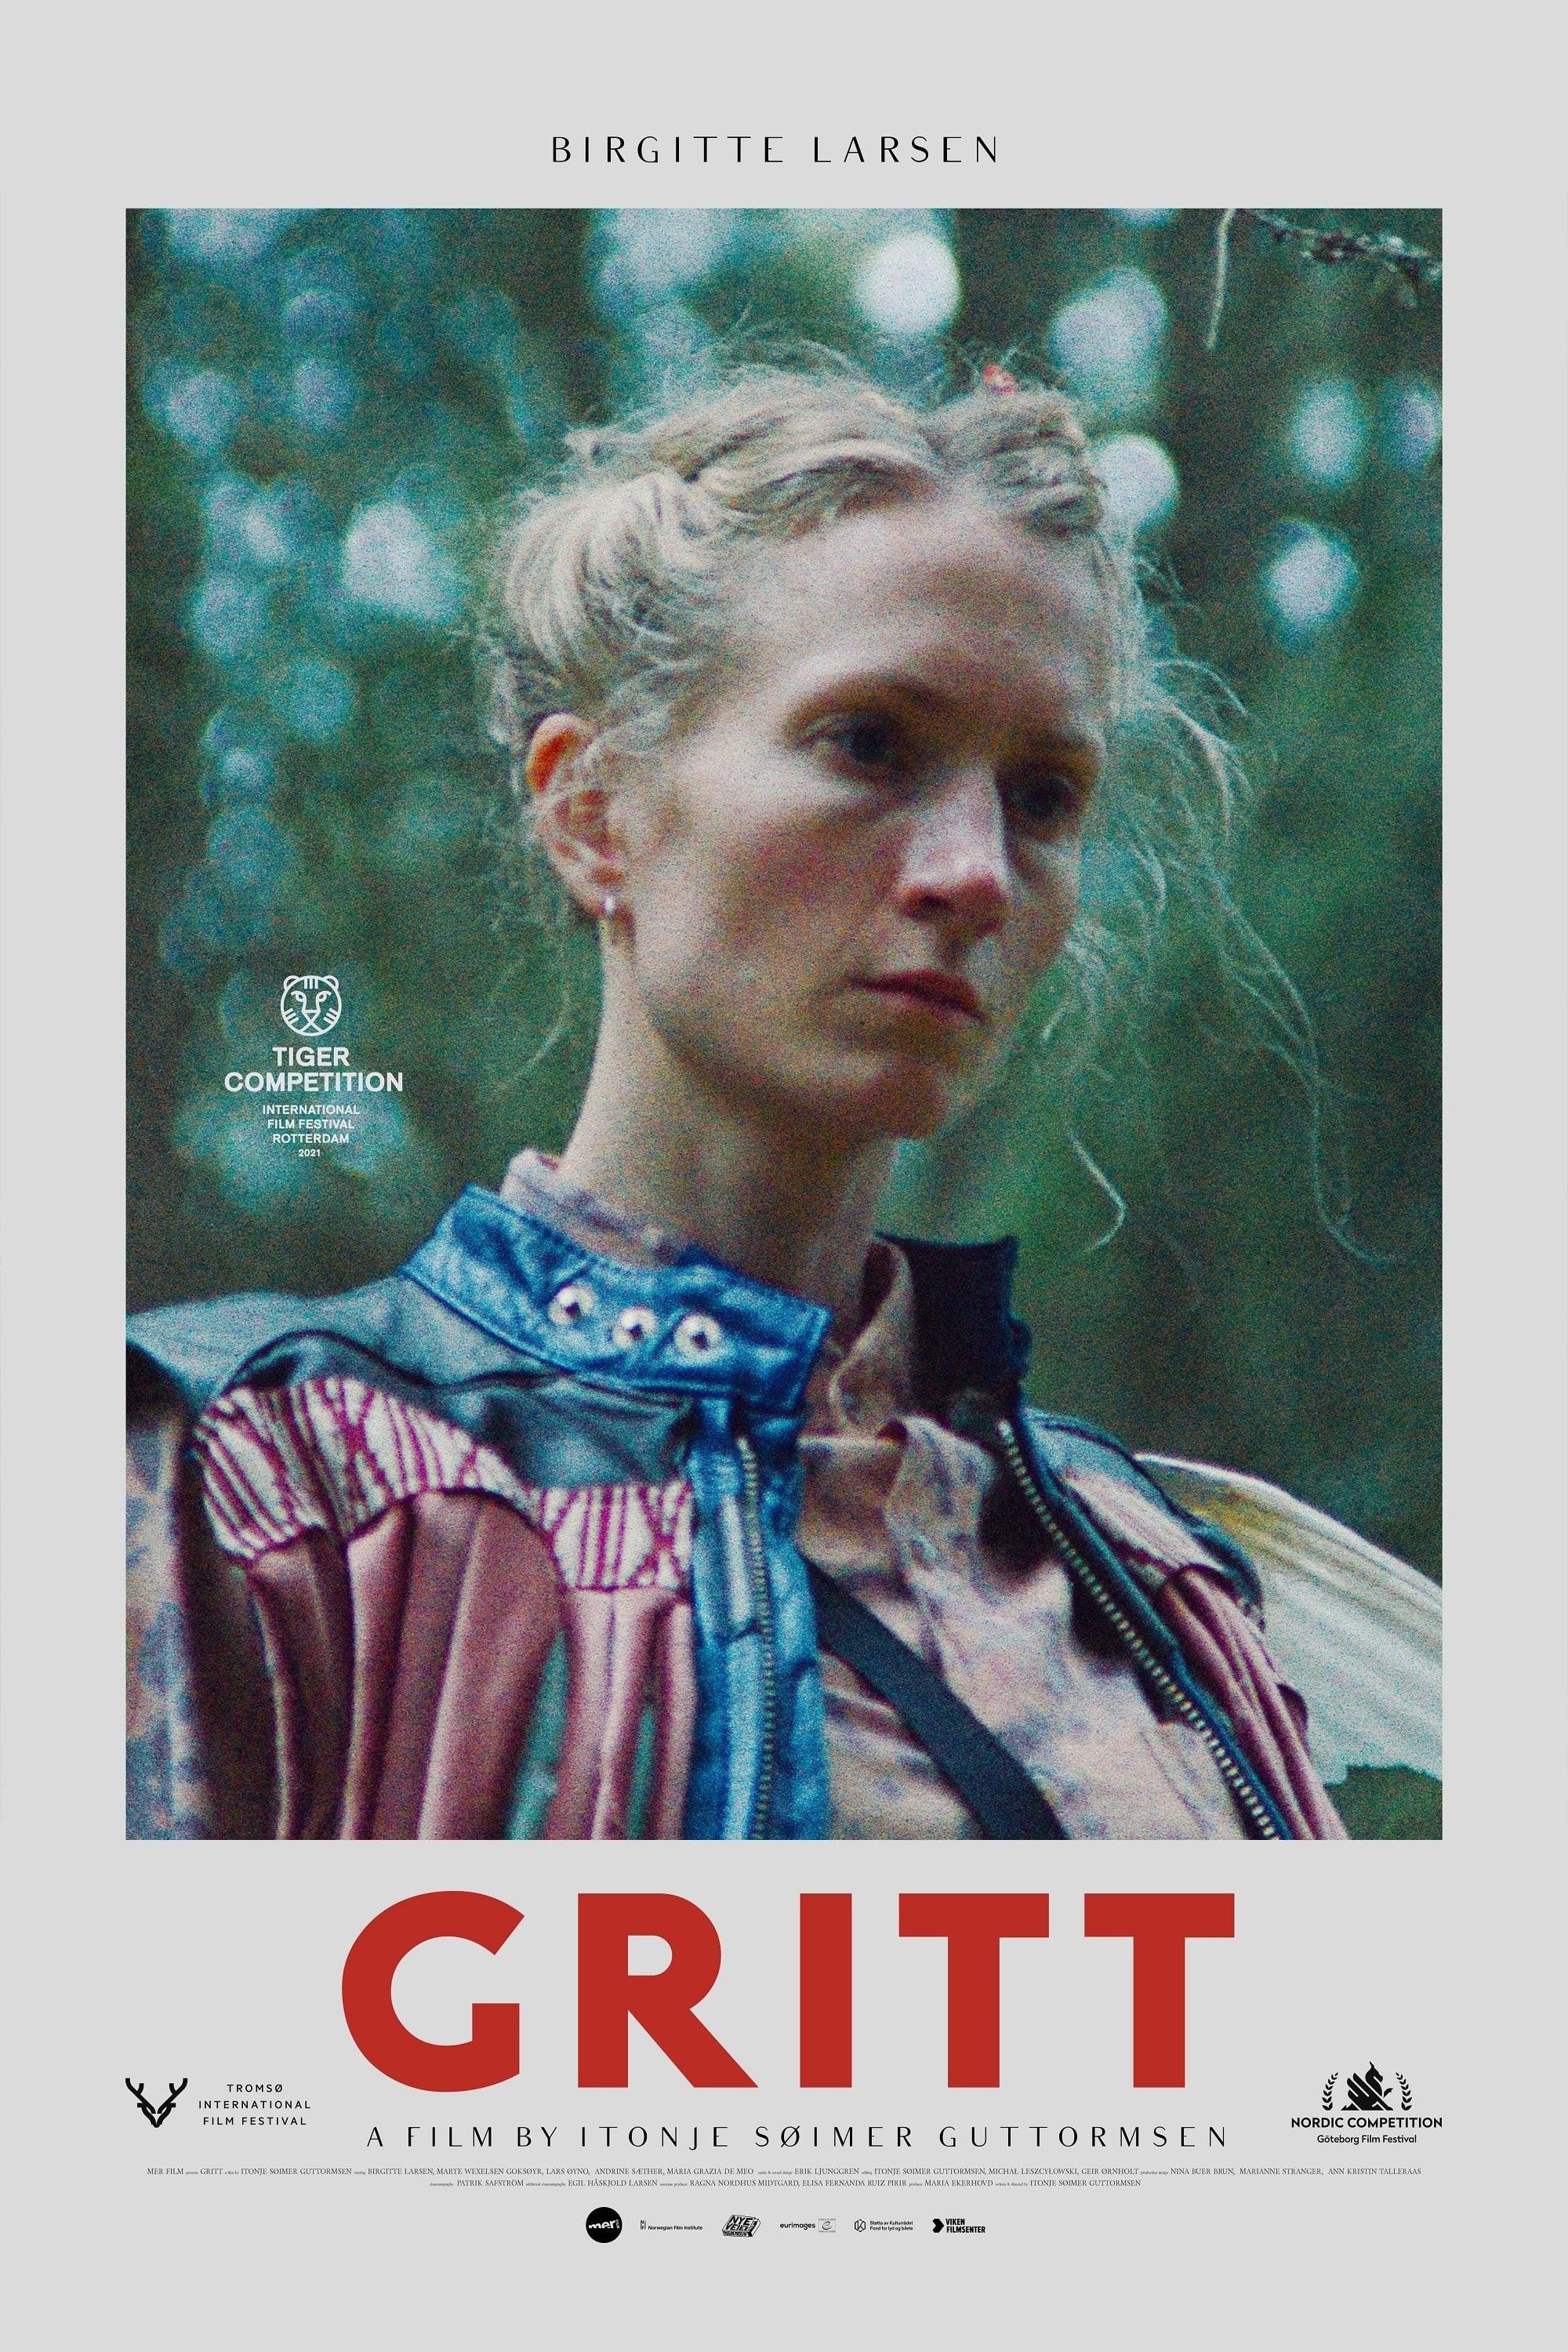 Gritt poster